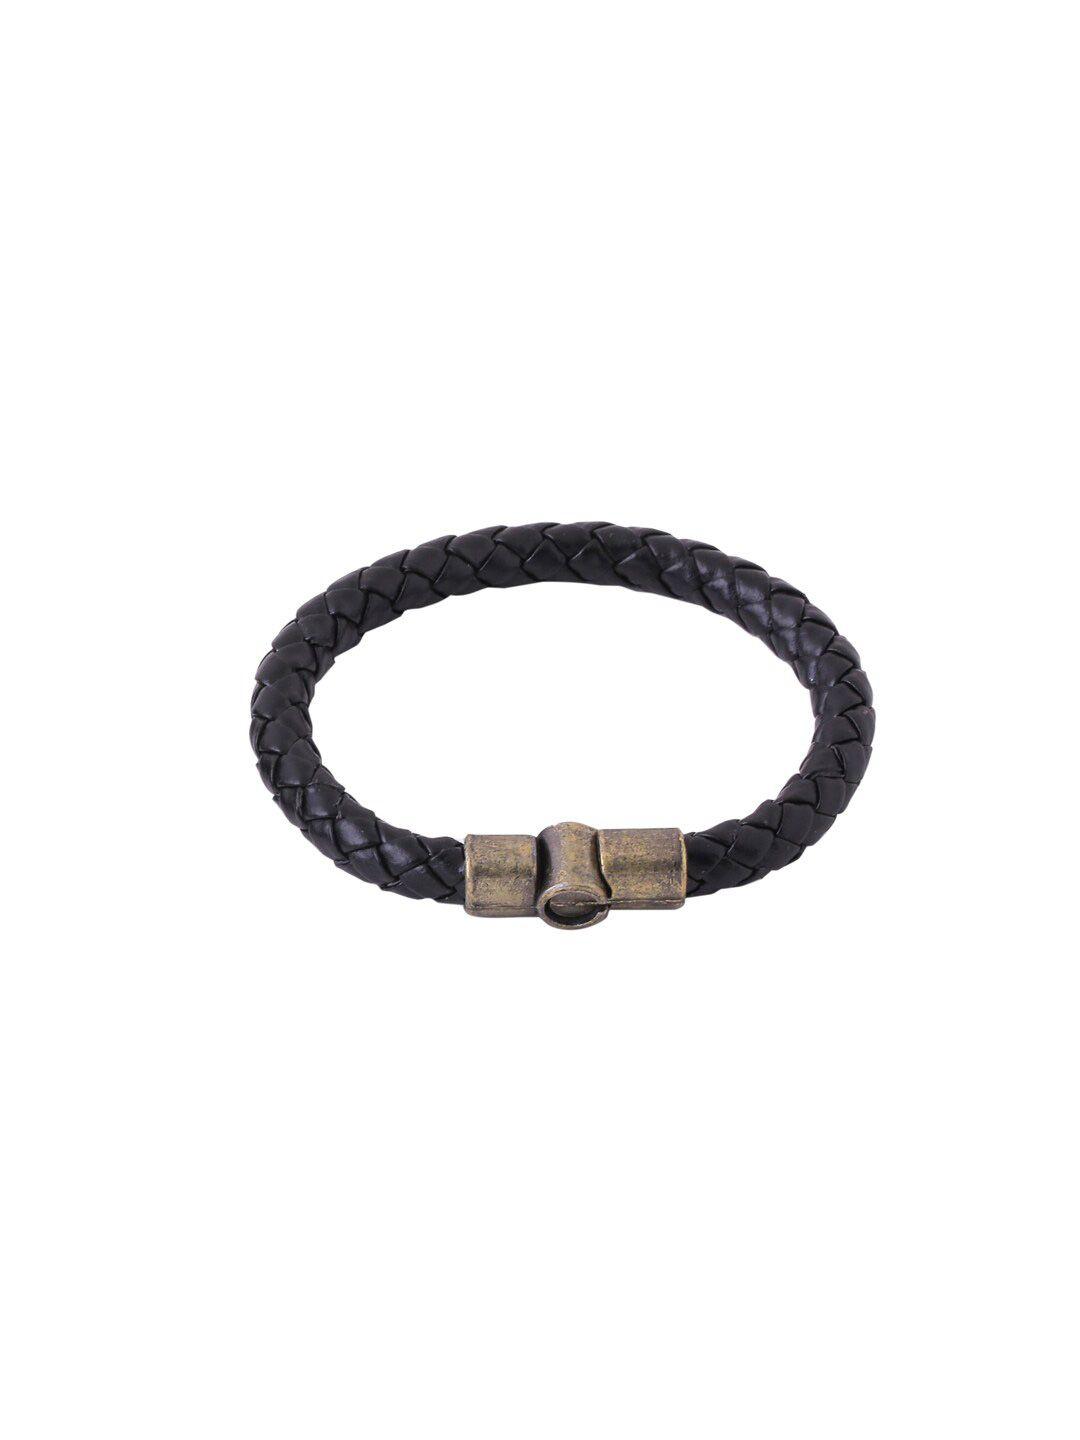 nvr unisex black leather wraparound bracelet